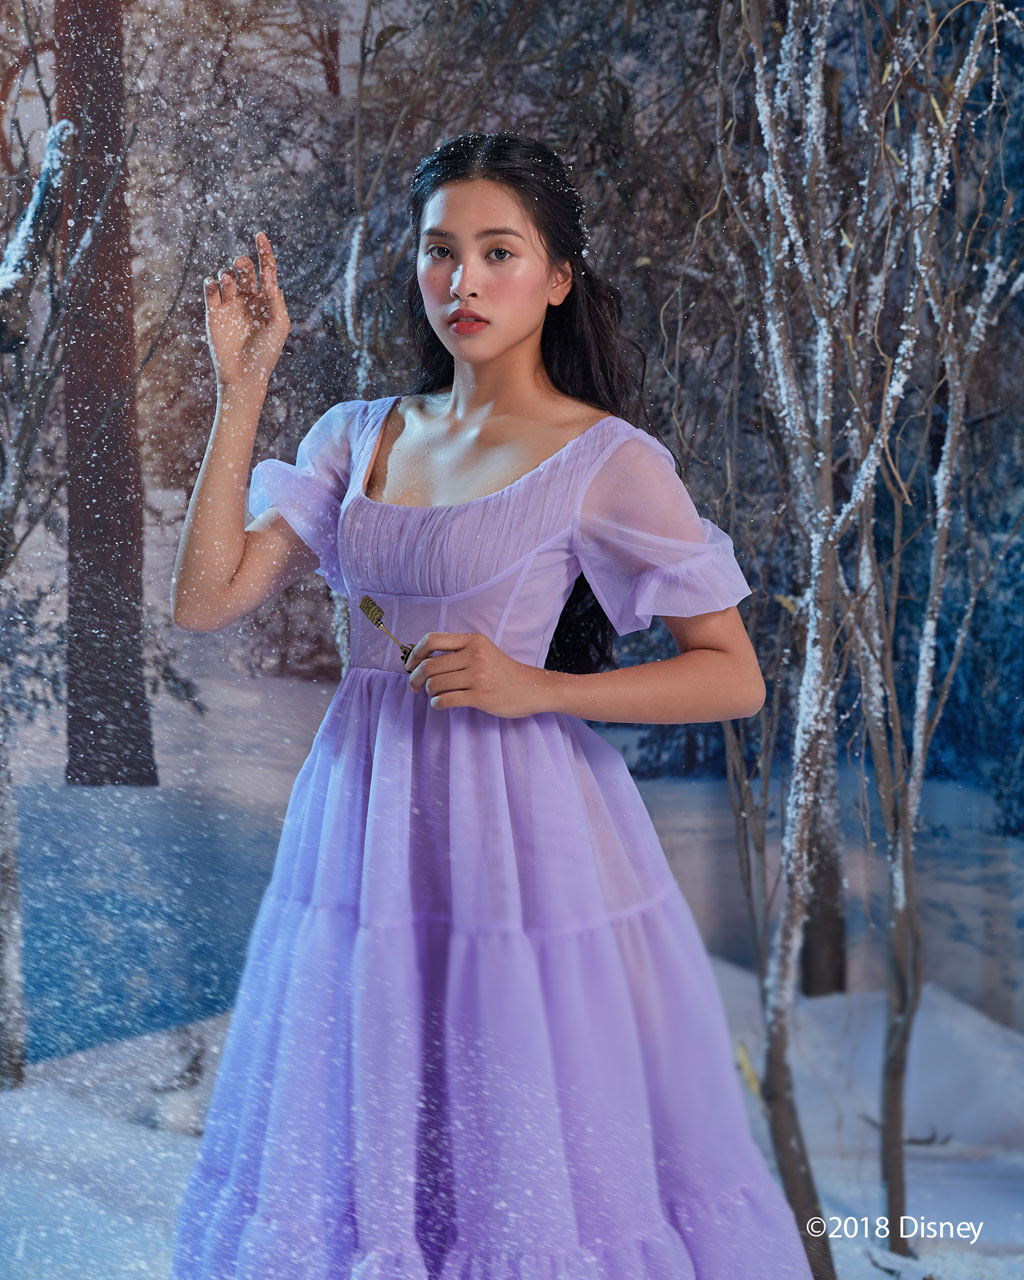 Hoa hậu Tiểu Vy bất ngờ hóa thân thành công chúa Disney1